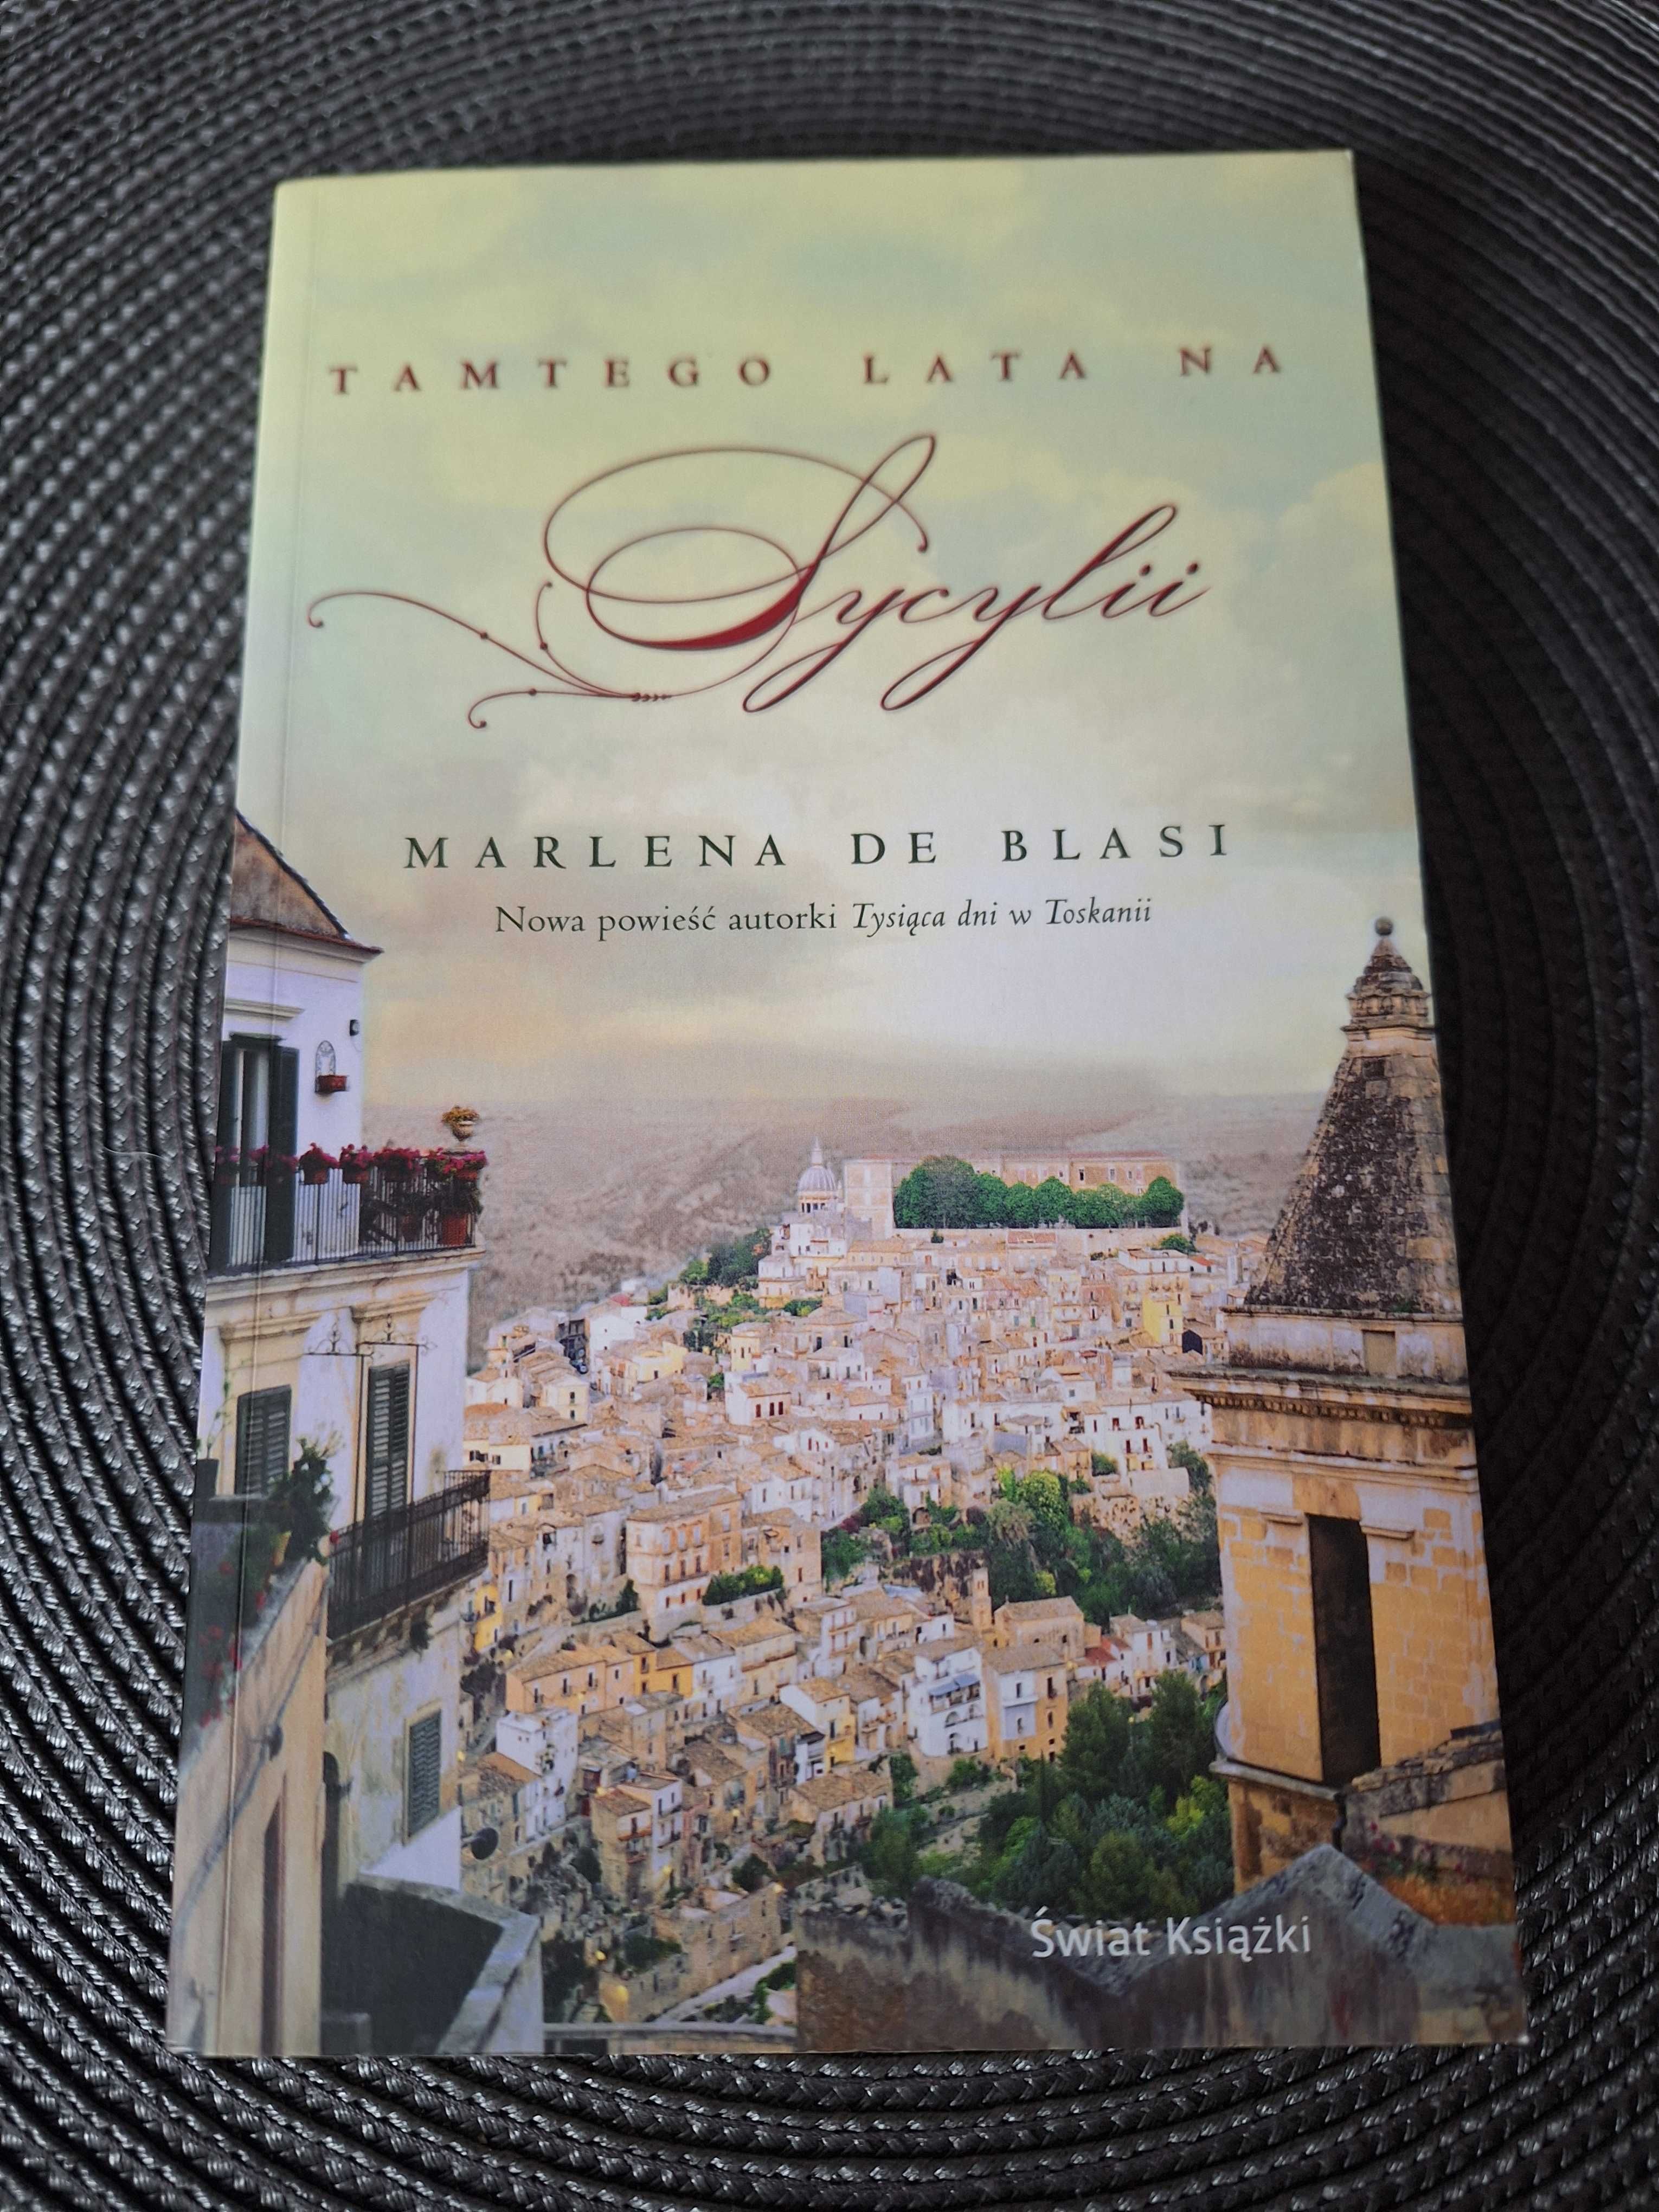 Pakiet książek! Marlena de Blasi, Tamtego lata na Sycylii i Amandine